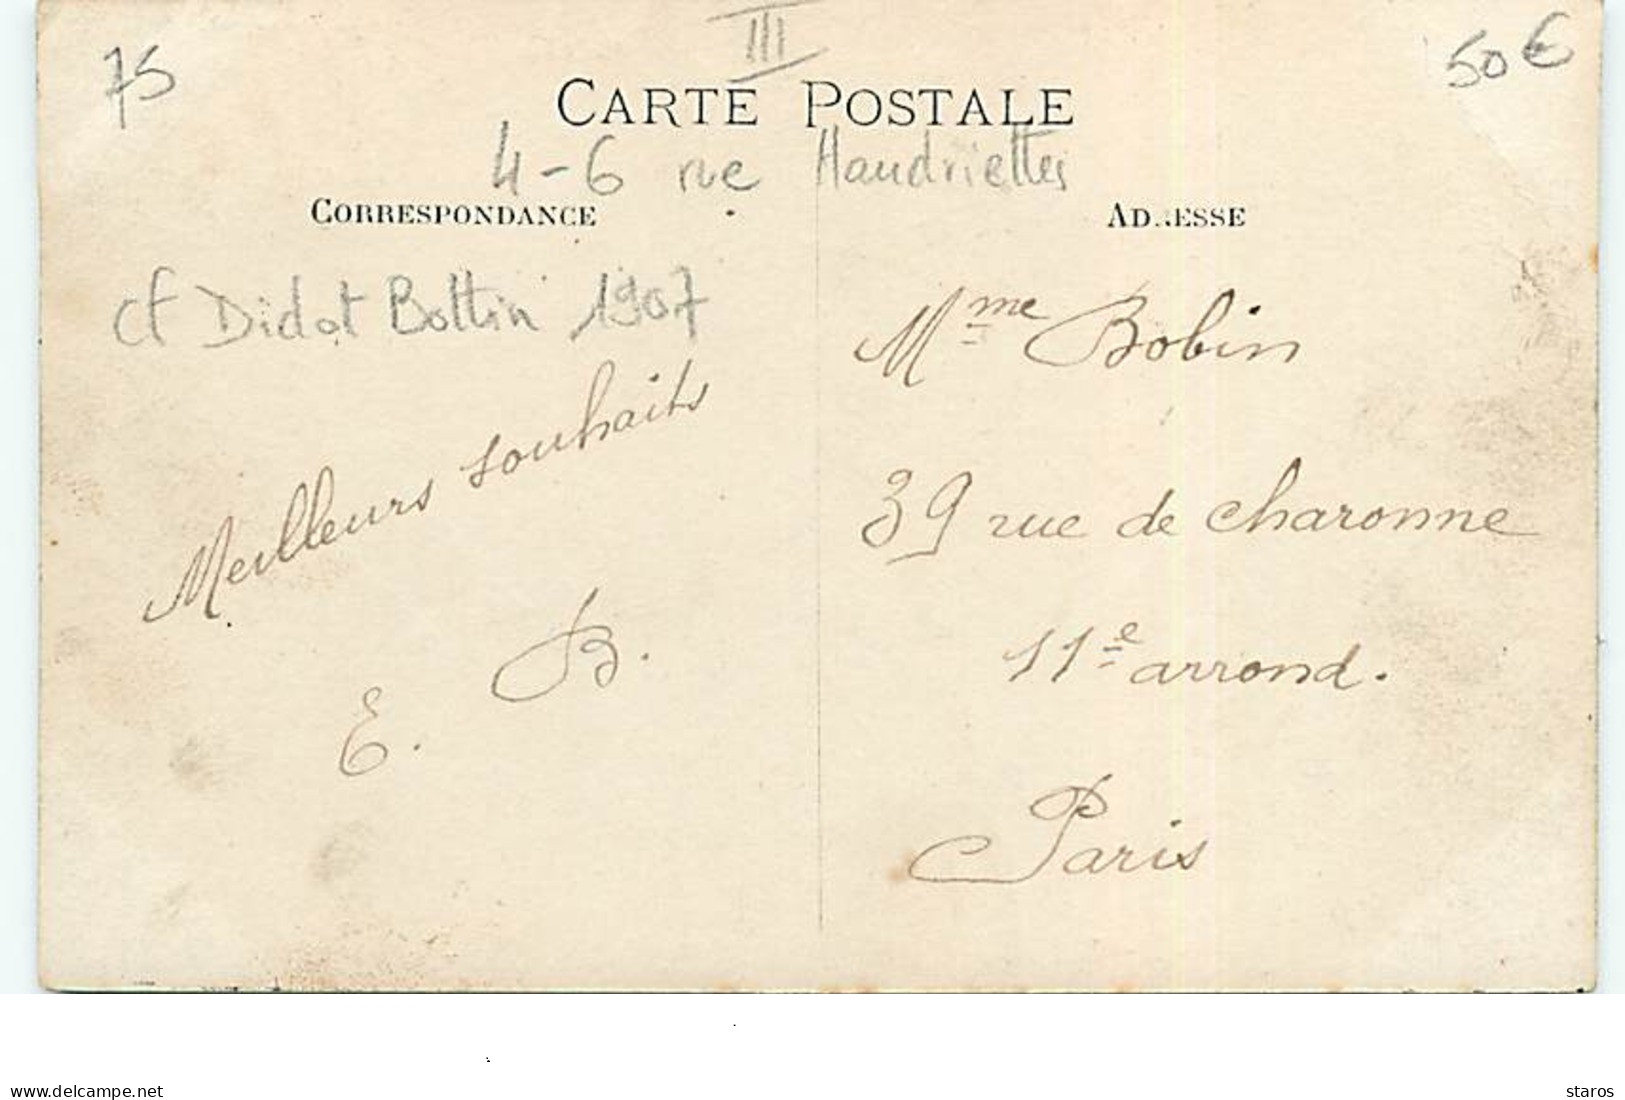 Carte-Photo - PARIS III - 4-6 Rue Haudriettes (cf Didot Bottin 1907) - Cartonnages Veuve Planson - District 03